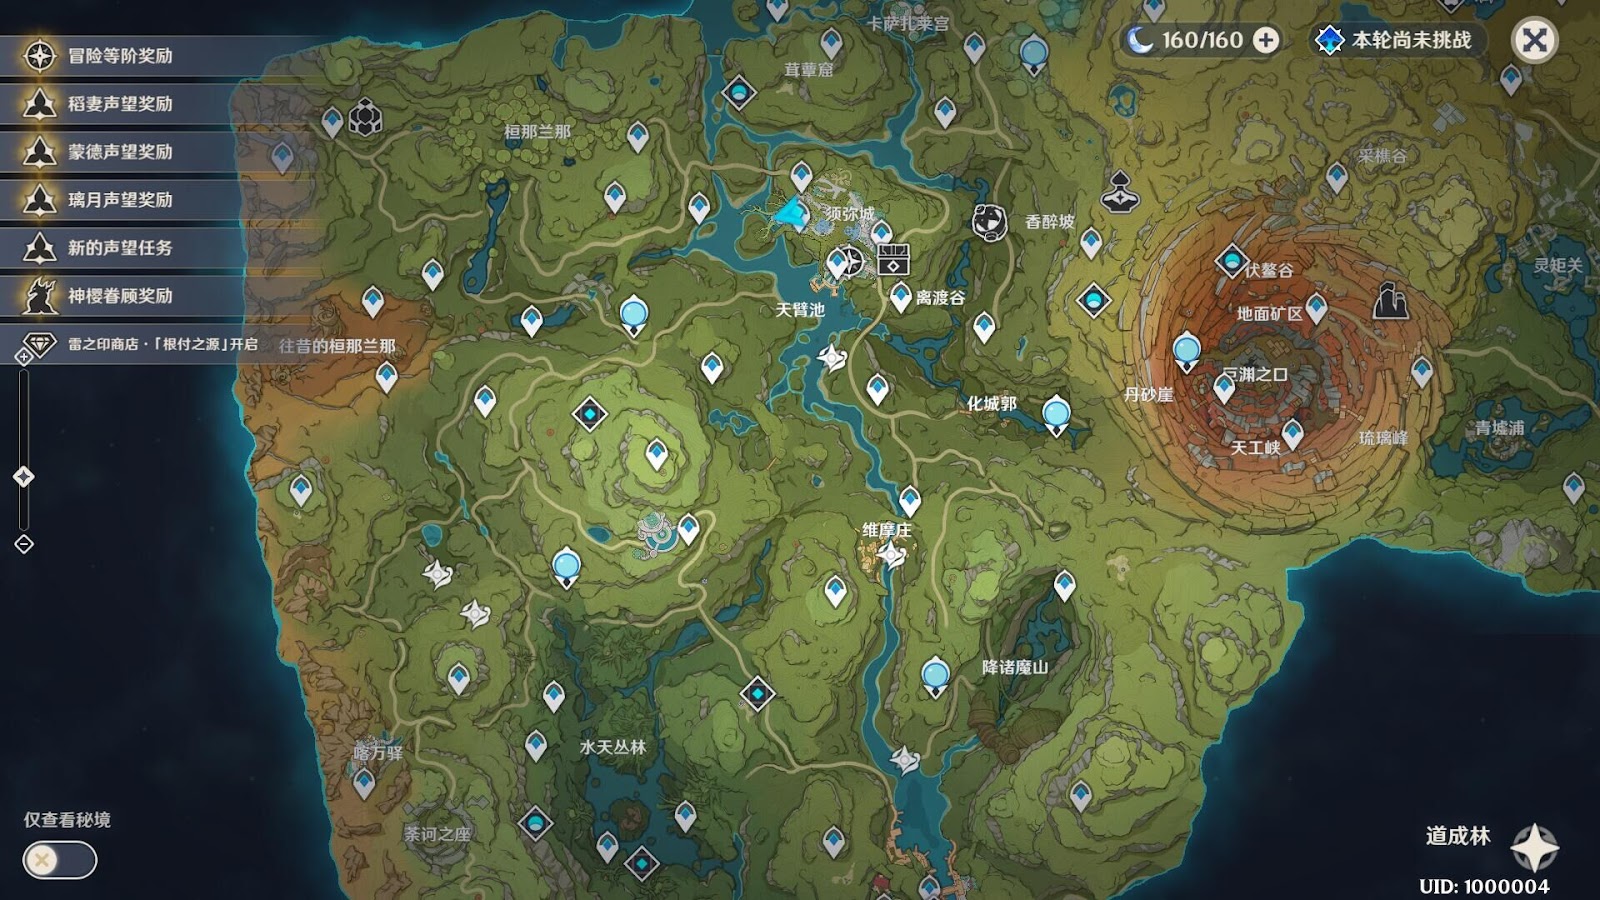 Genshin Impact 3.0 map of Sumeru